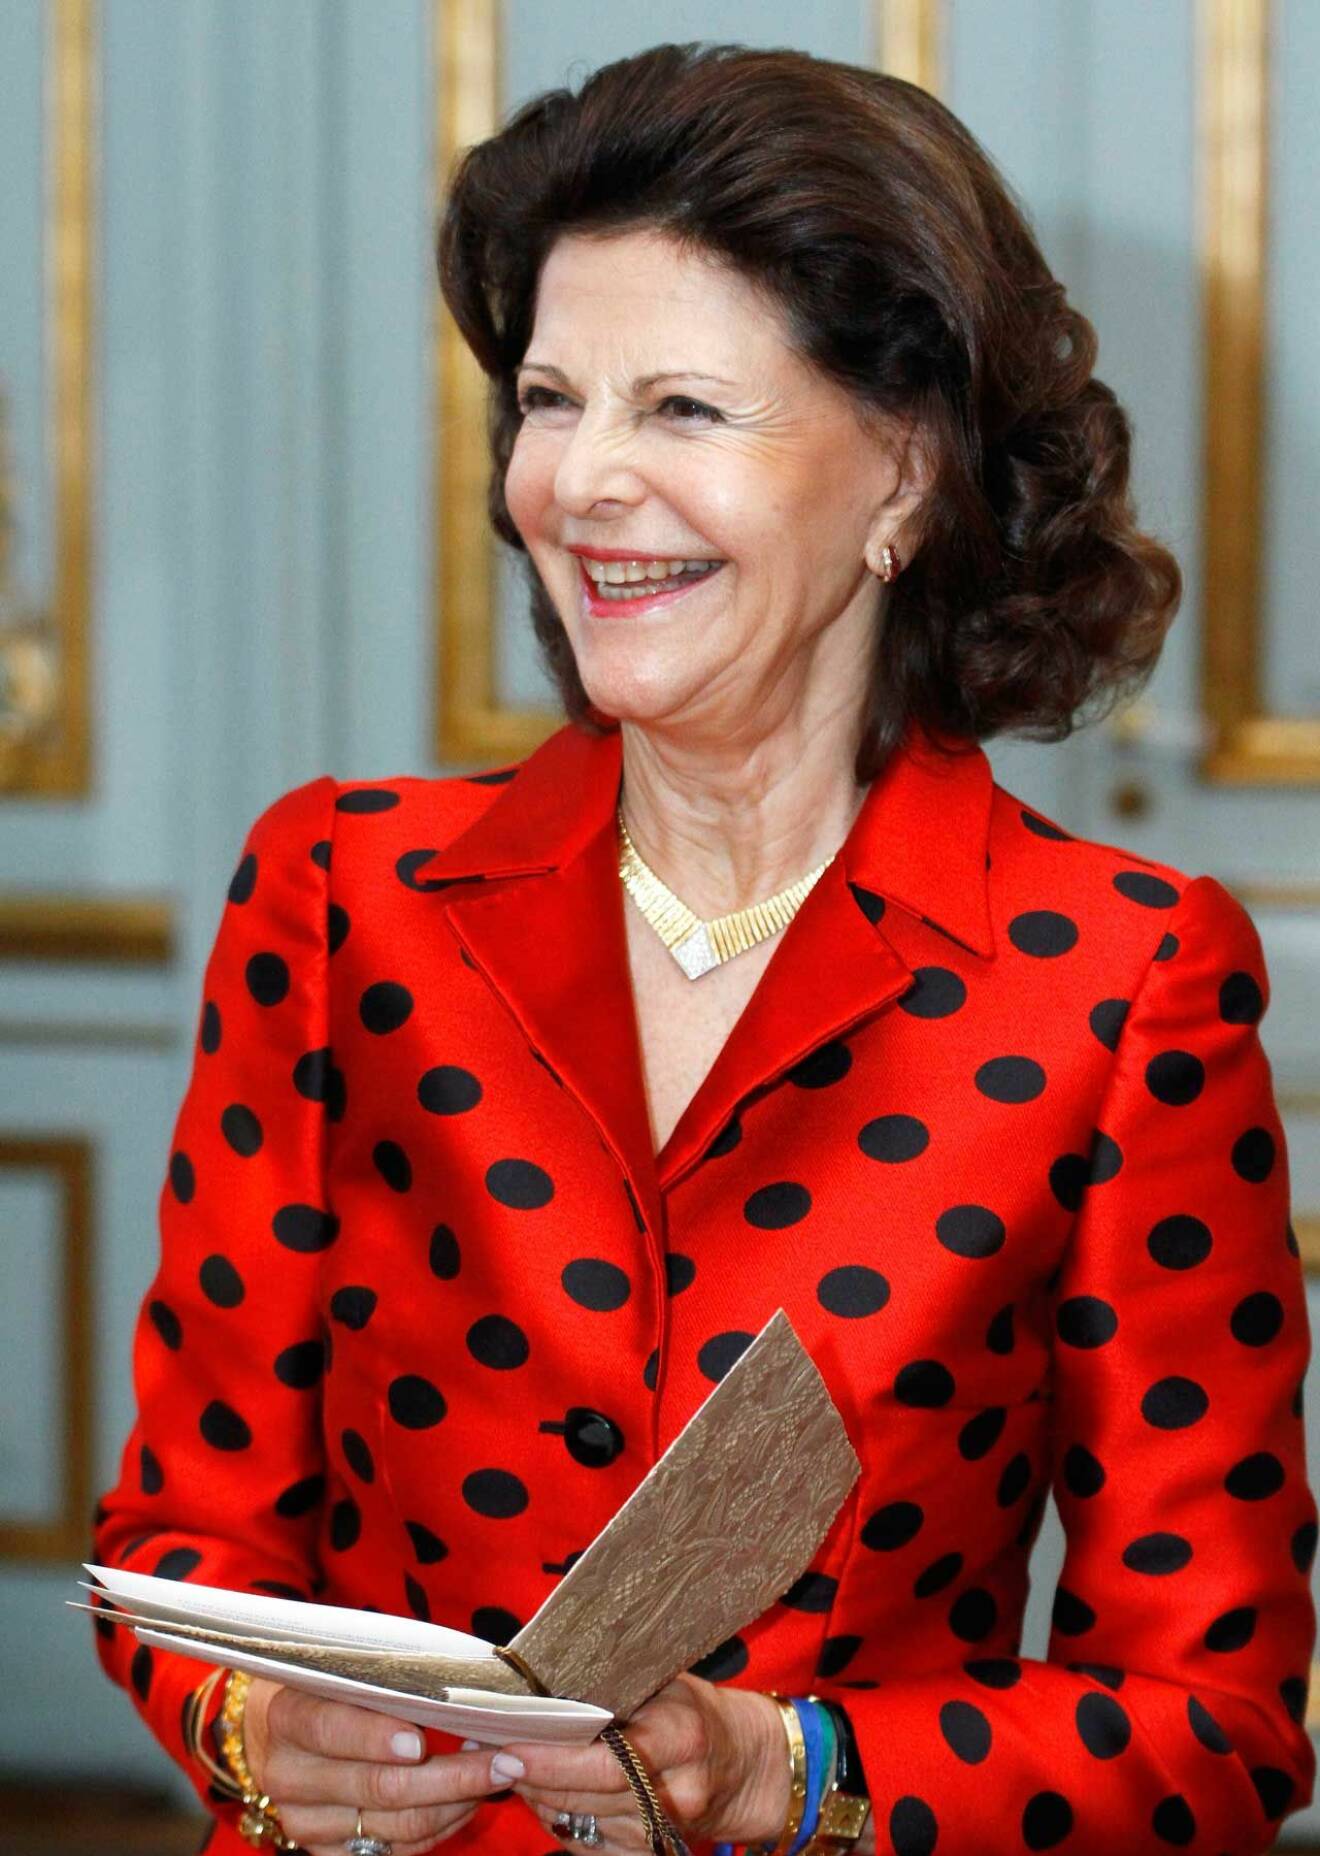 Drottning Silvia på Stockholms slott, klädd i röd prickig sidendräkt.